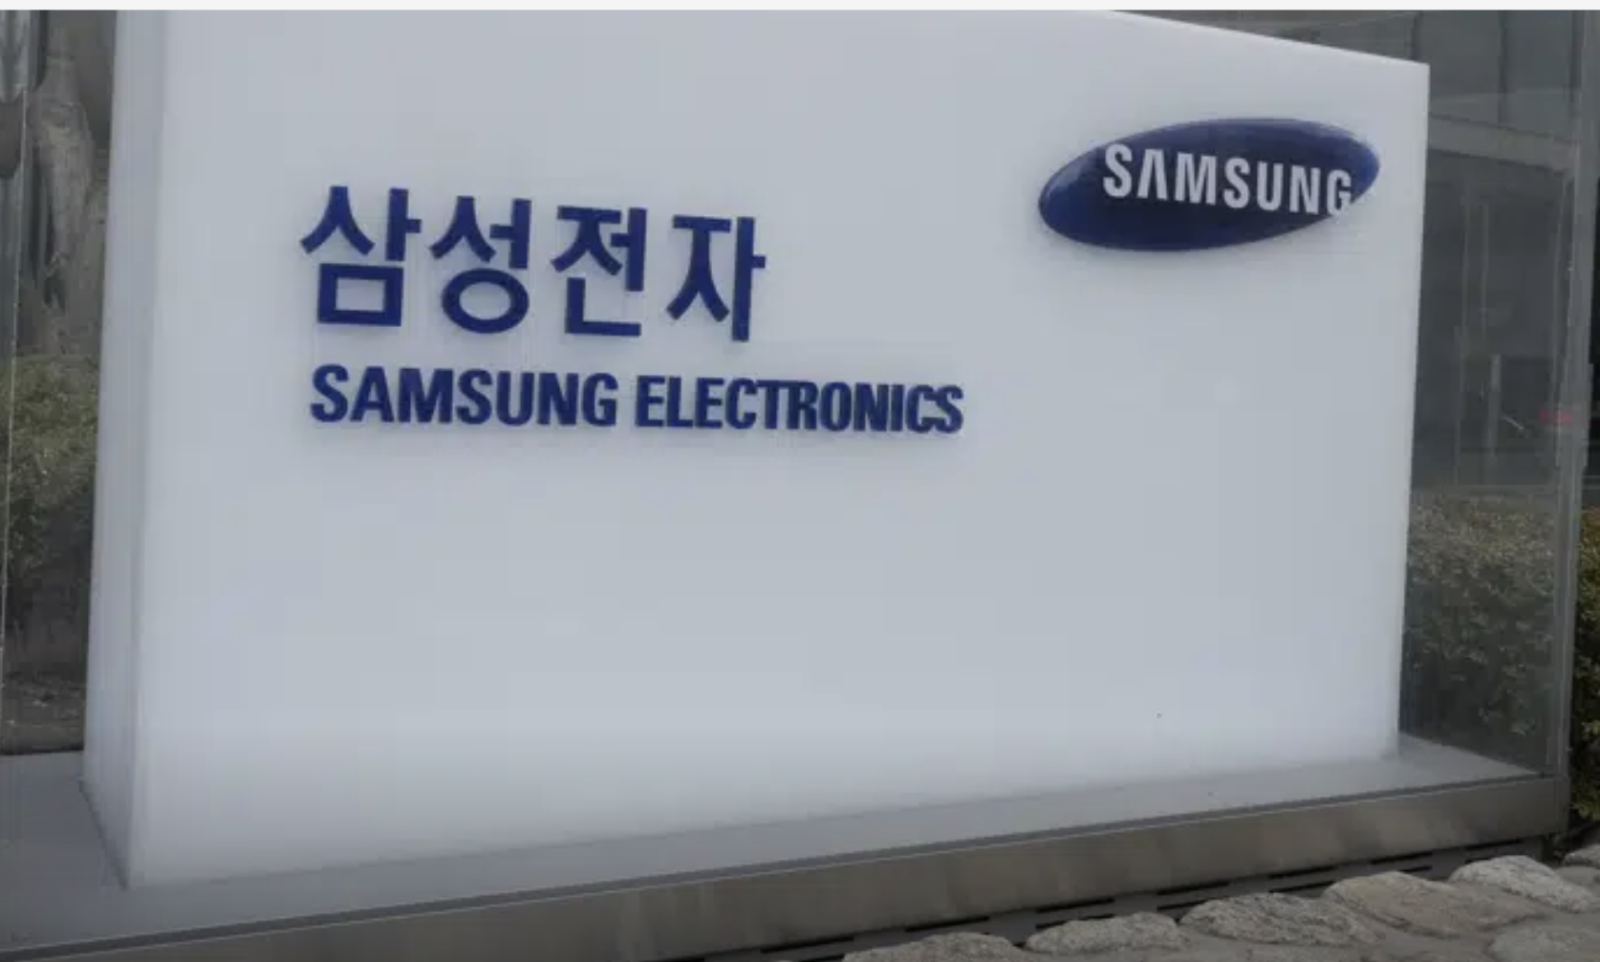 Cựu giám đốc Samsung đã tuồn thiết kế mật để xây nhà máy đối thủ tại Trung Quốc như thế nào - Ảnh 1.